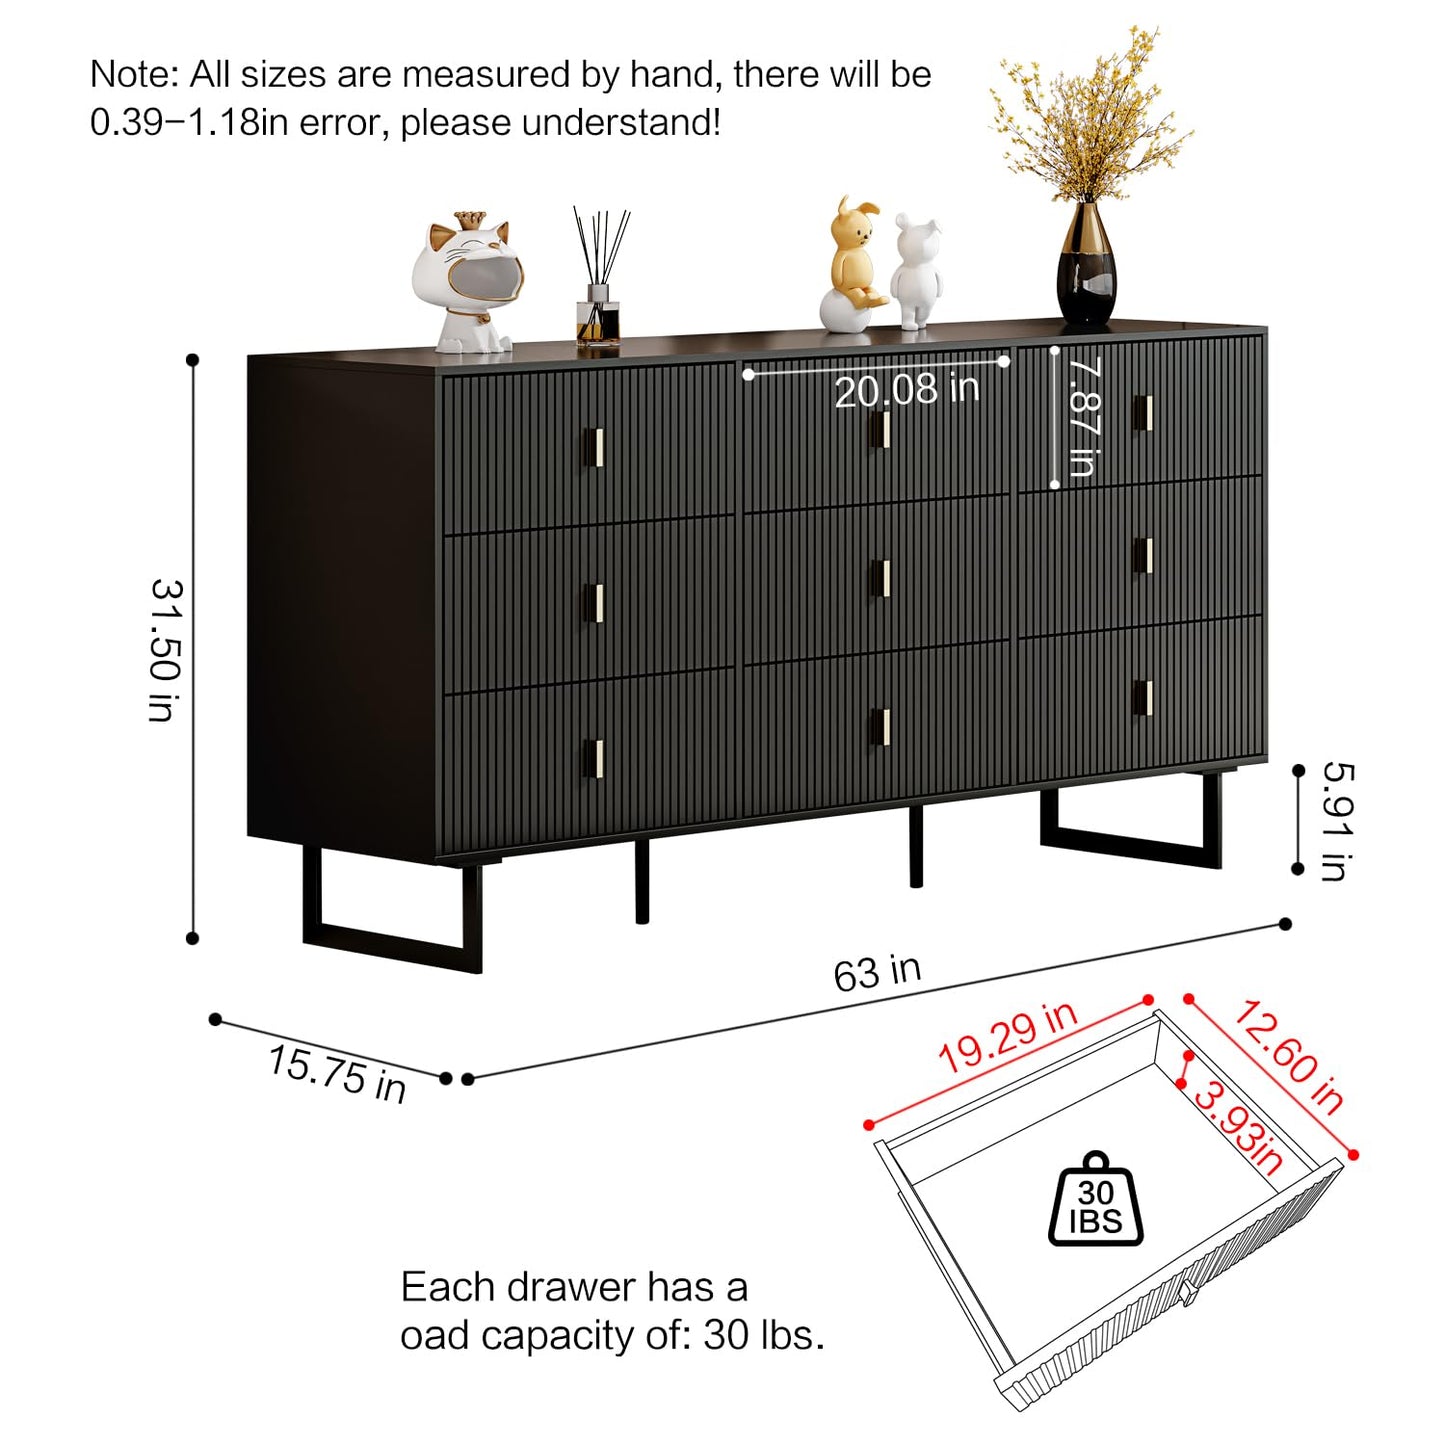 Pure black 9 Drawer Dresser for Bedroom, Large Double Dresser with Wide Drawers, Modern Chest of Drawers,Storage Organizer Dresser,Nursery Dresser,for Living Room, Hallway, Bedroom, Kids Bedroom